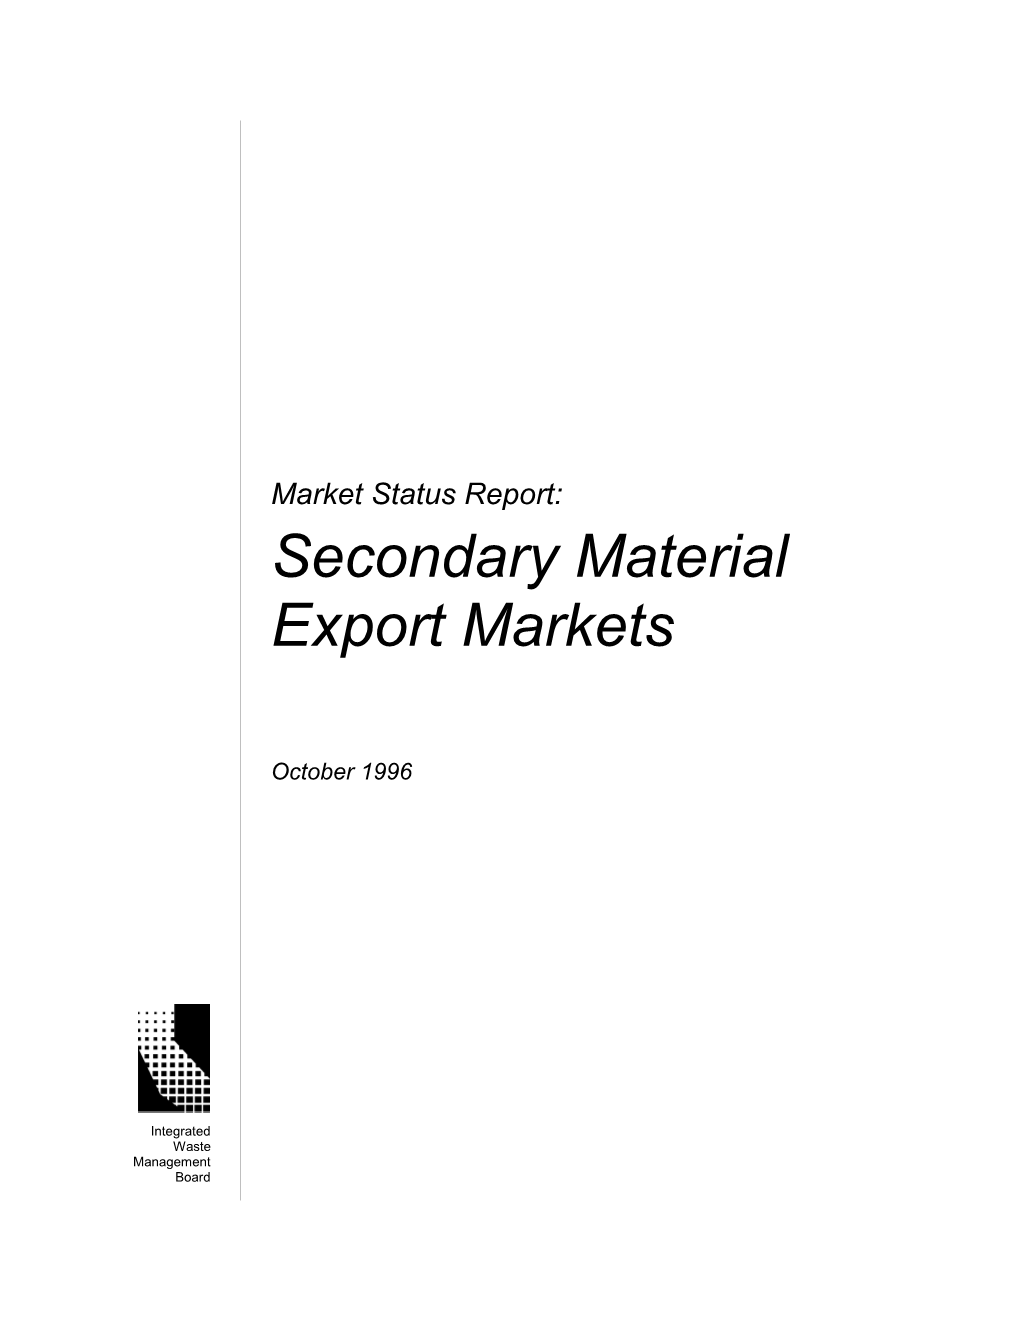 Market Status Report: Secondary Materials Exports